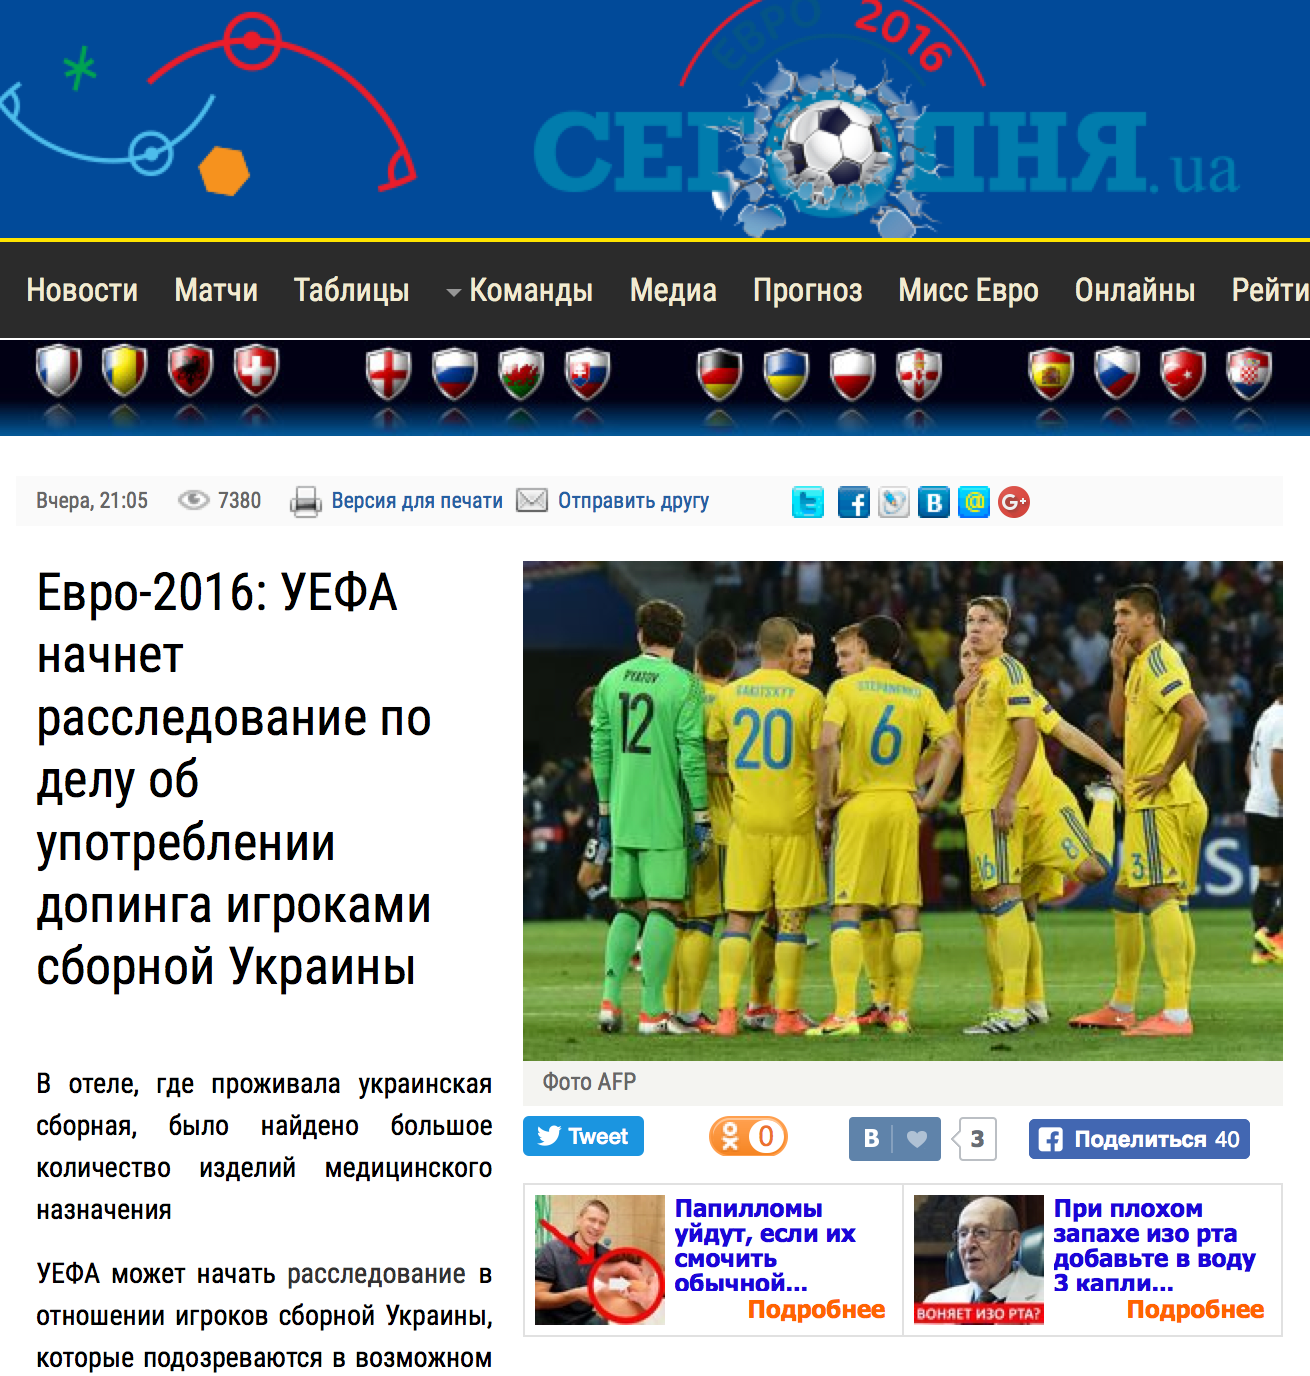 Euro 2016: La UEFA lanzará una investigación sobre el uso de dopaje por la selección ucraniana | Segodnya 